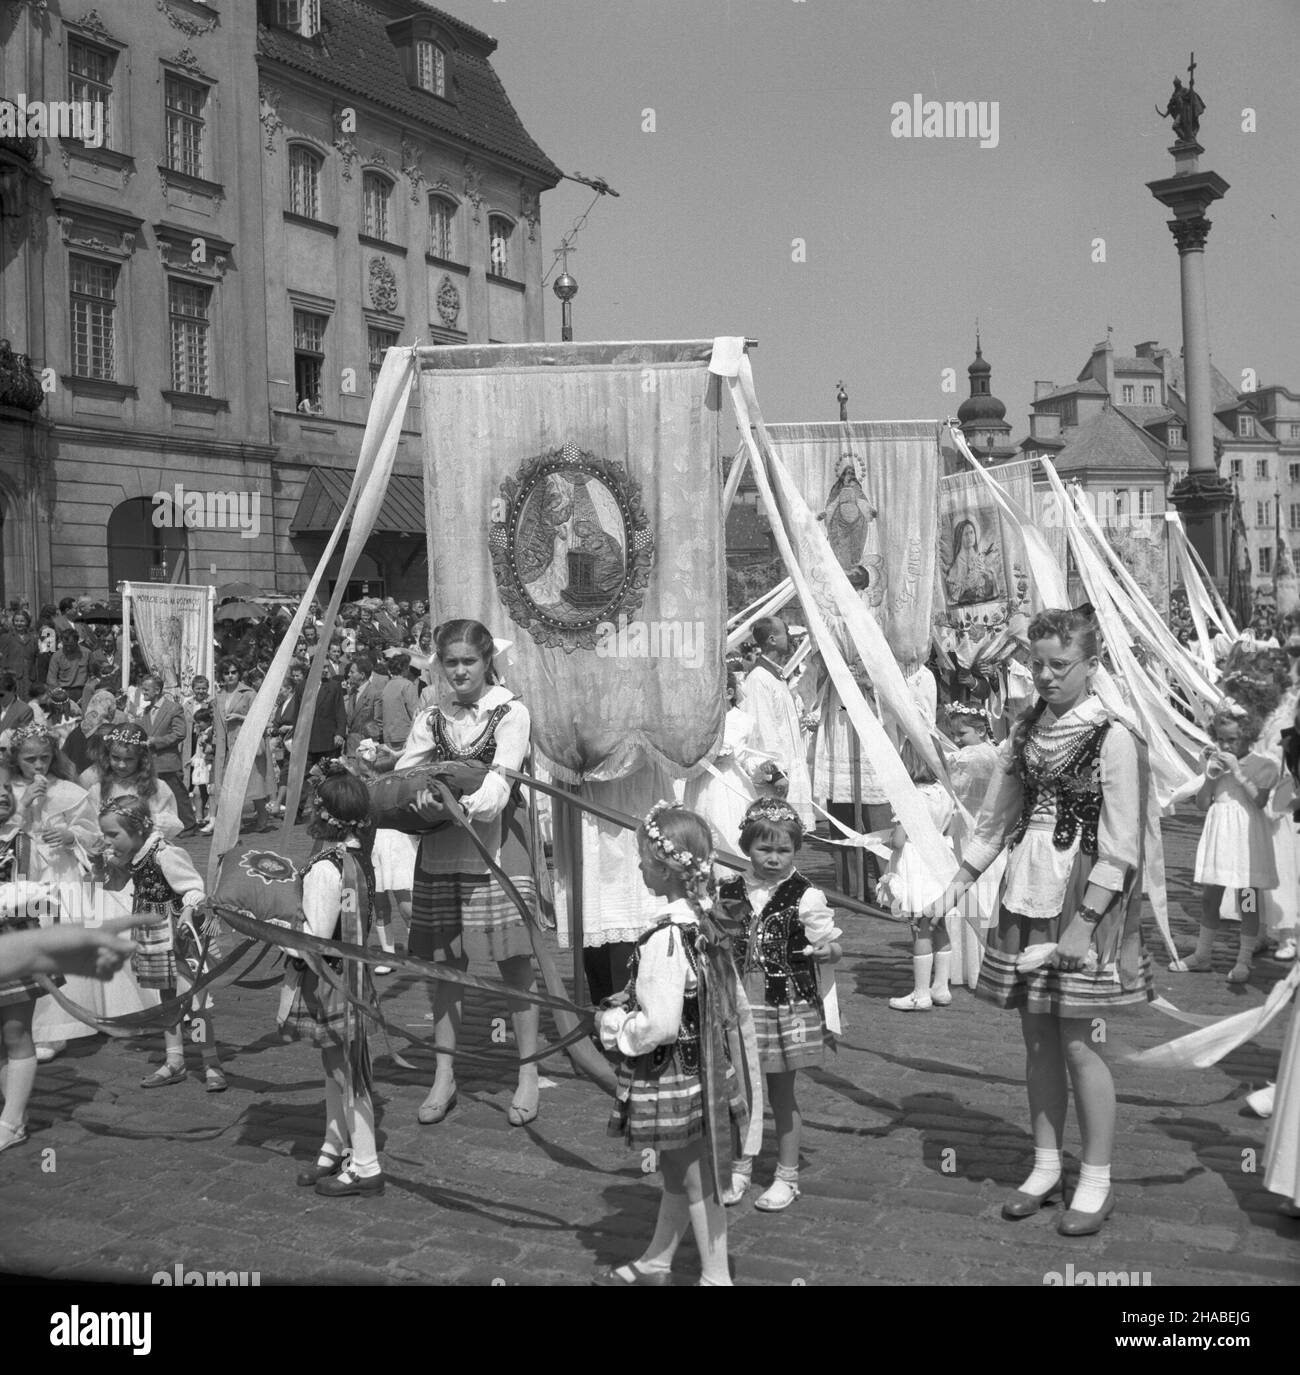 Warszawa 28.05.1964. Uroczystoœæ Najœwiêtszego Cia³a i Krwi Pañskiej - œwiêto Bo¿ego Cia³a. Nz. procesja z Najœwiêtszym Sakramentem na ul. Krakowskie Przedmieœcie. mta  PAP/Andrzej Kossobudzki Or³owski        Warsaw 28 May 1964. Corpus Christi, the Most Holy Body and Blood of Christ celebration. Pictured: the procession with the Holy Sacrament at Krakowskie Przedmiescie Street.   mta  PAP/Andrzej Kossobudzki Orlowski Stock Photo